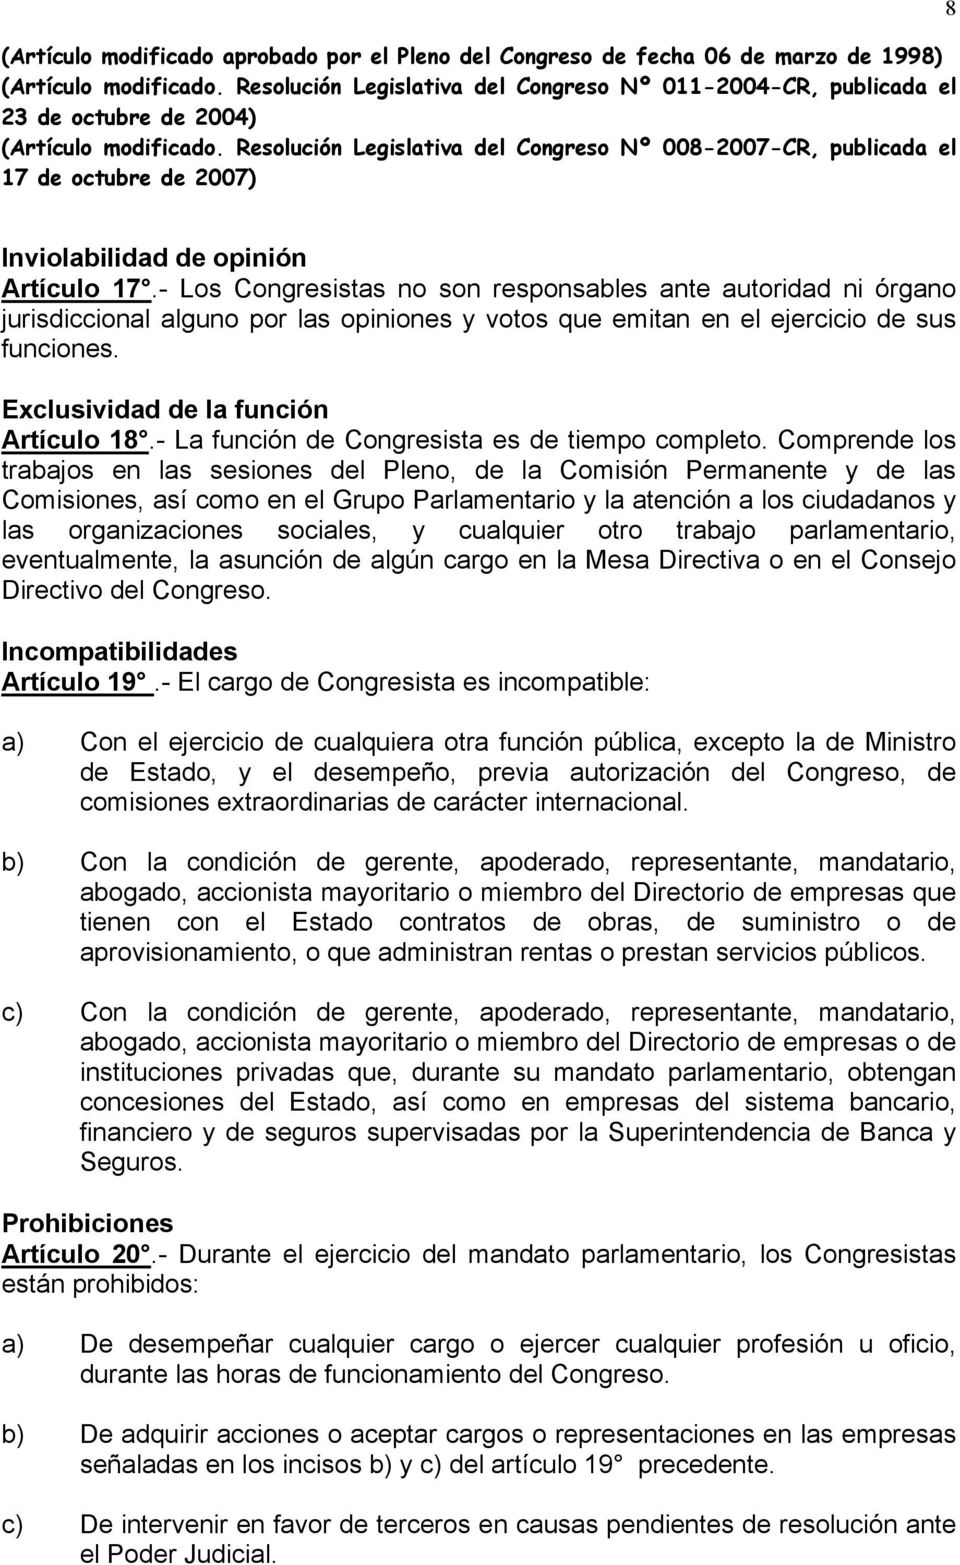 Resolución Legislativa del Congreso Nº 008-2007-CR, publicada el 17 de octubre de 2007) 8 Inviolabilidad de opinión Artículo 17.